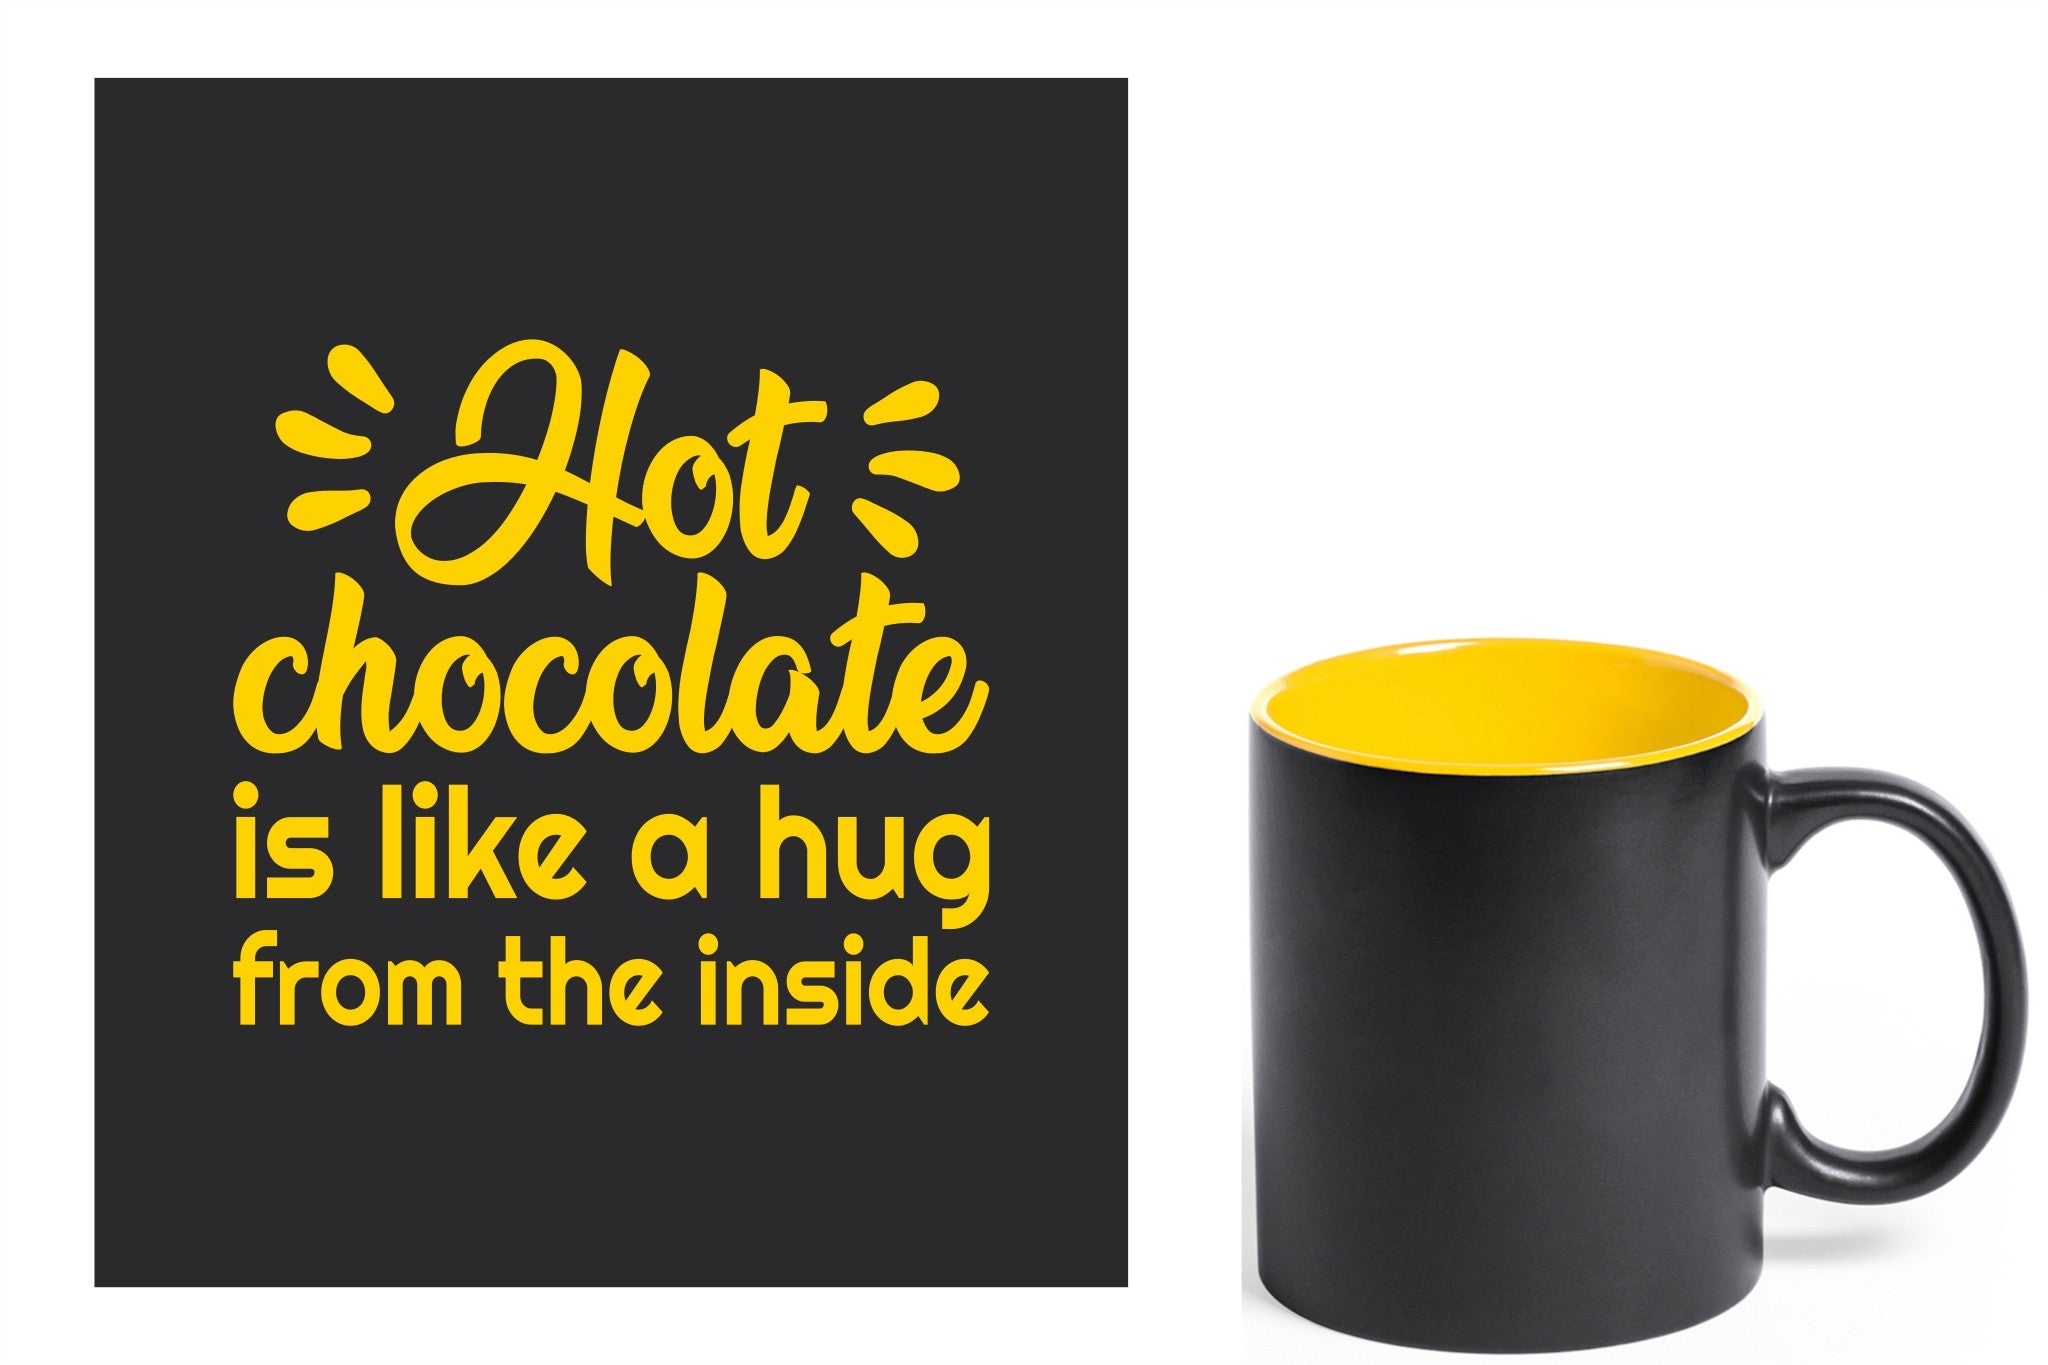 zwarte keramische mok met gele gravure  'Hot chocolate is like a hug from the inside'.